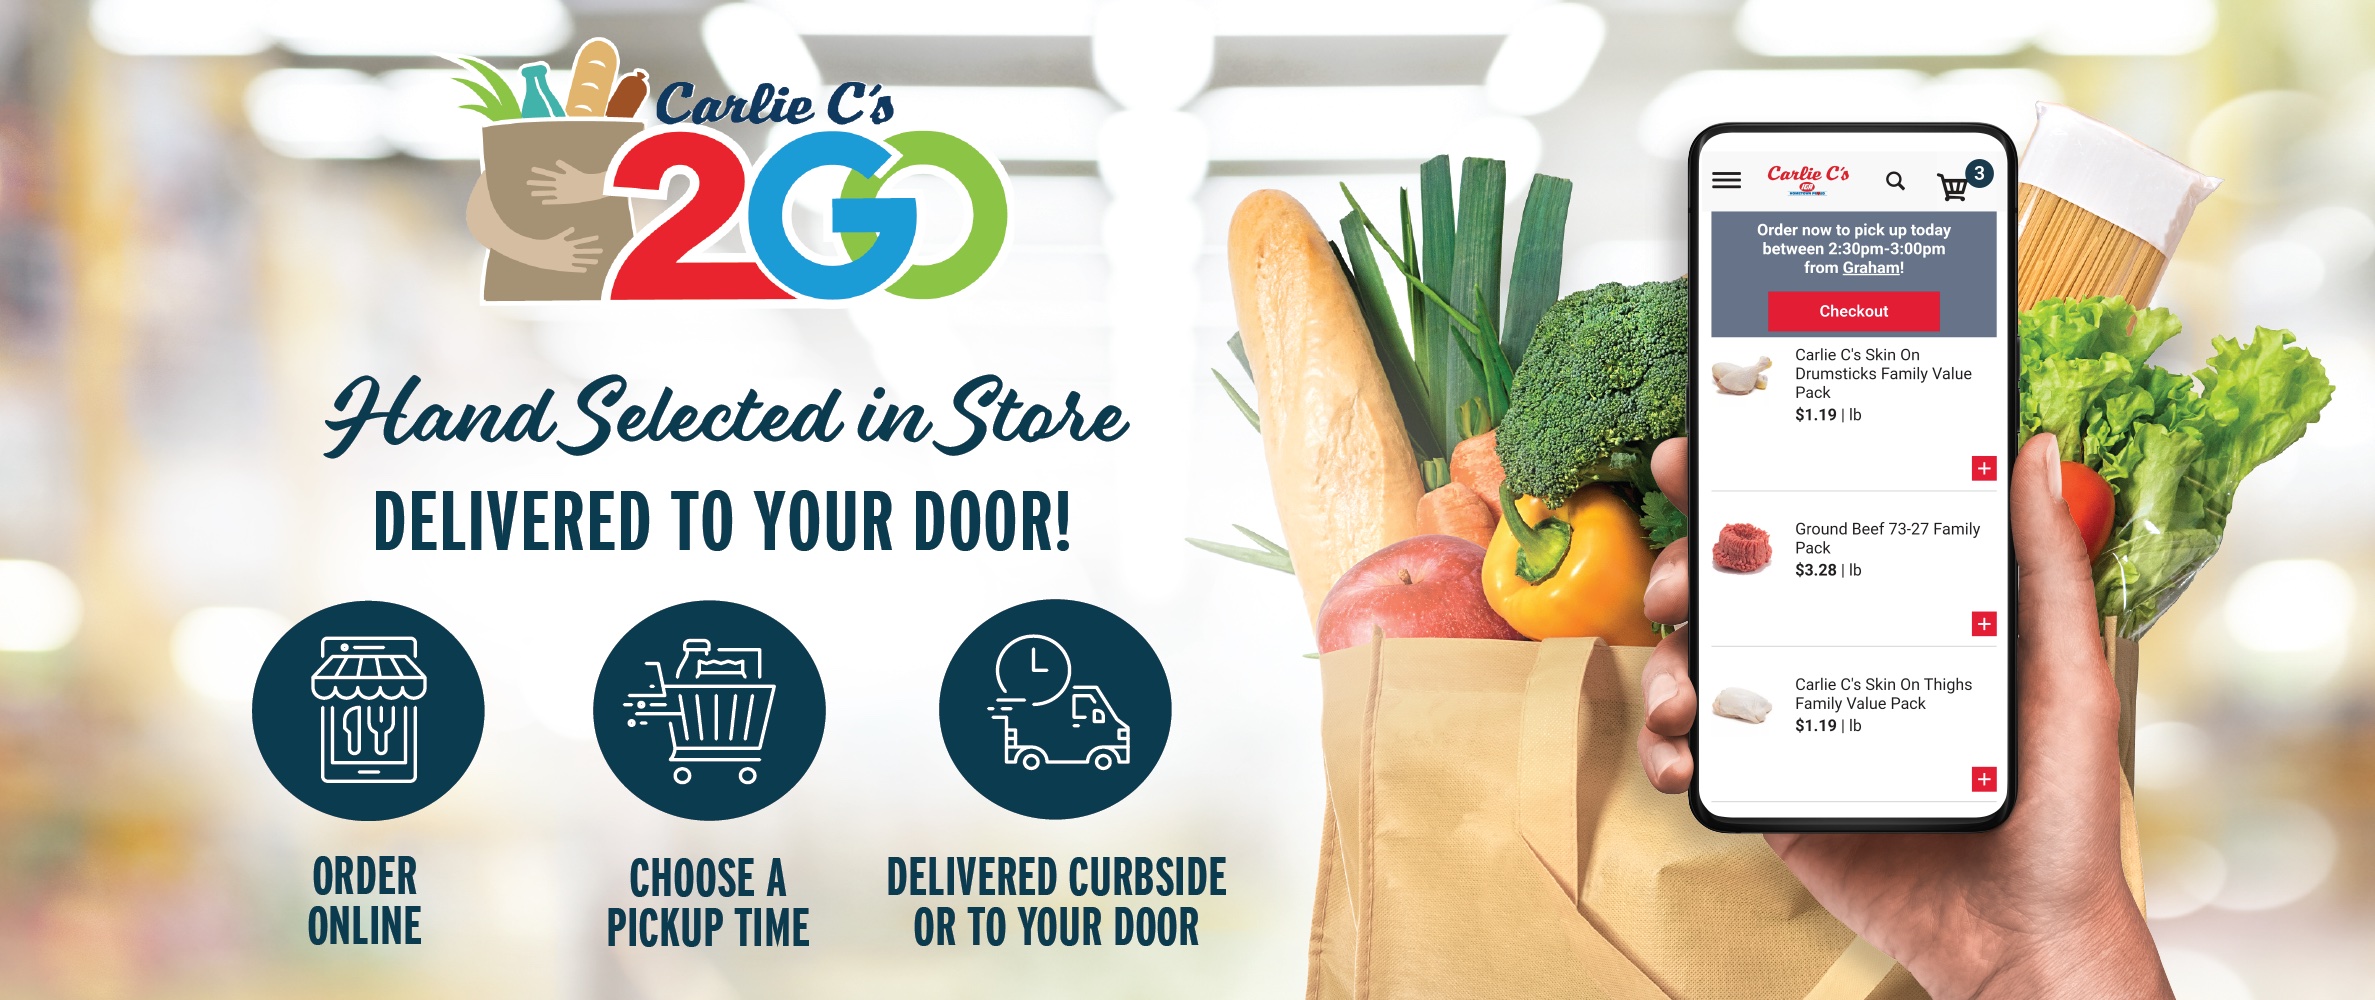 Carlie C's 2Go - Delivery To Your Door!